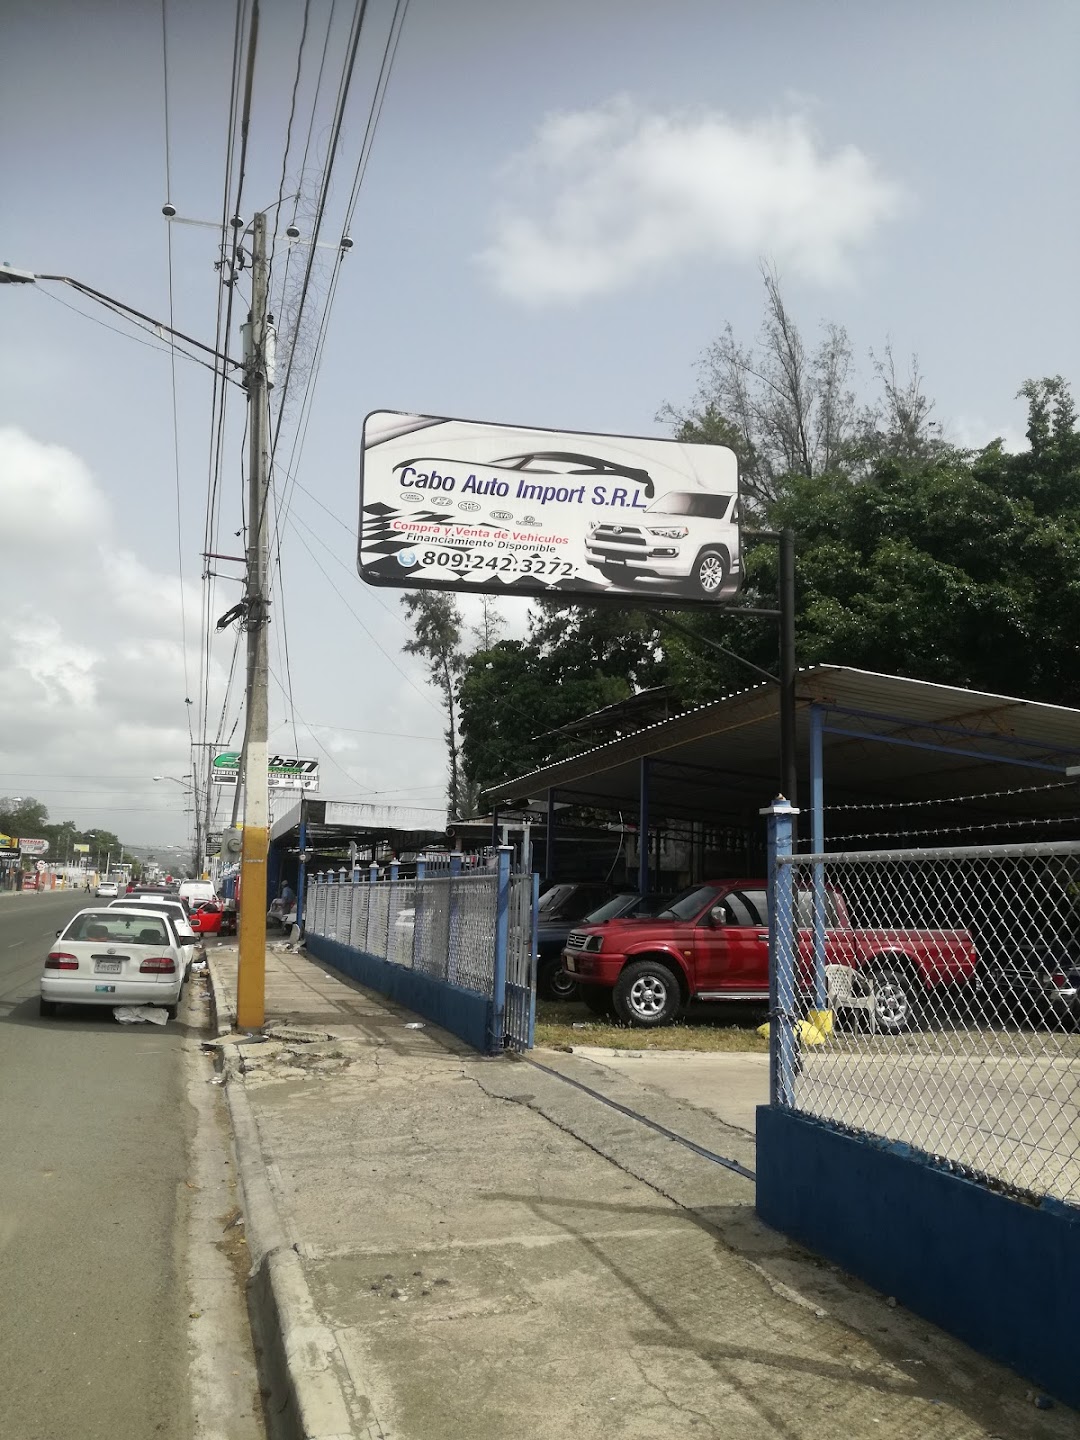 Cabo Auto Import